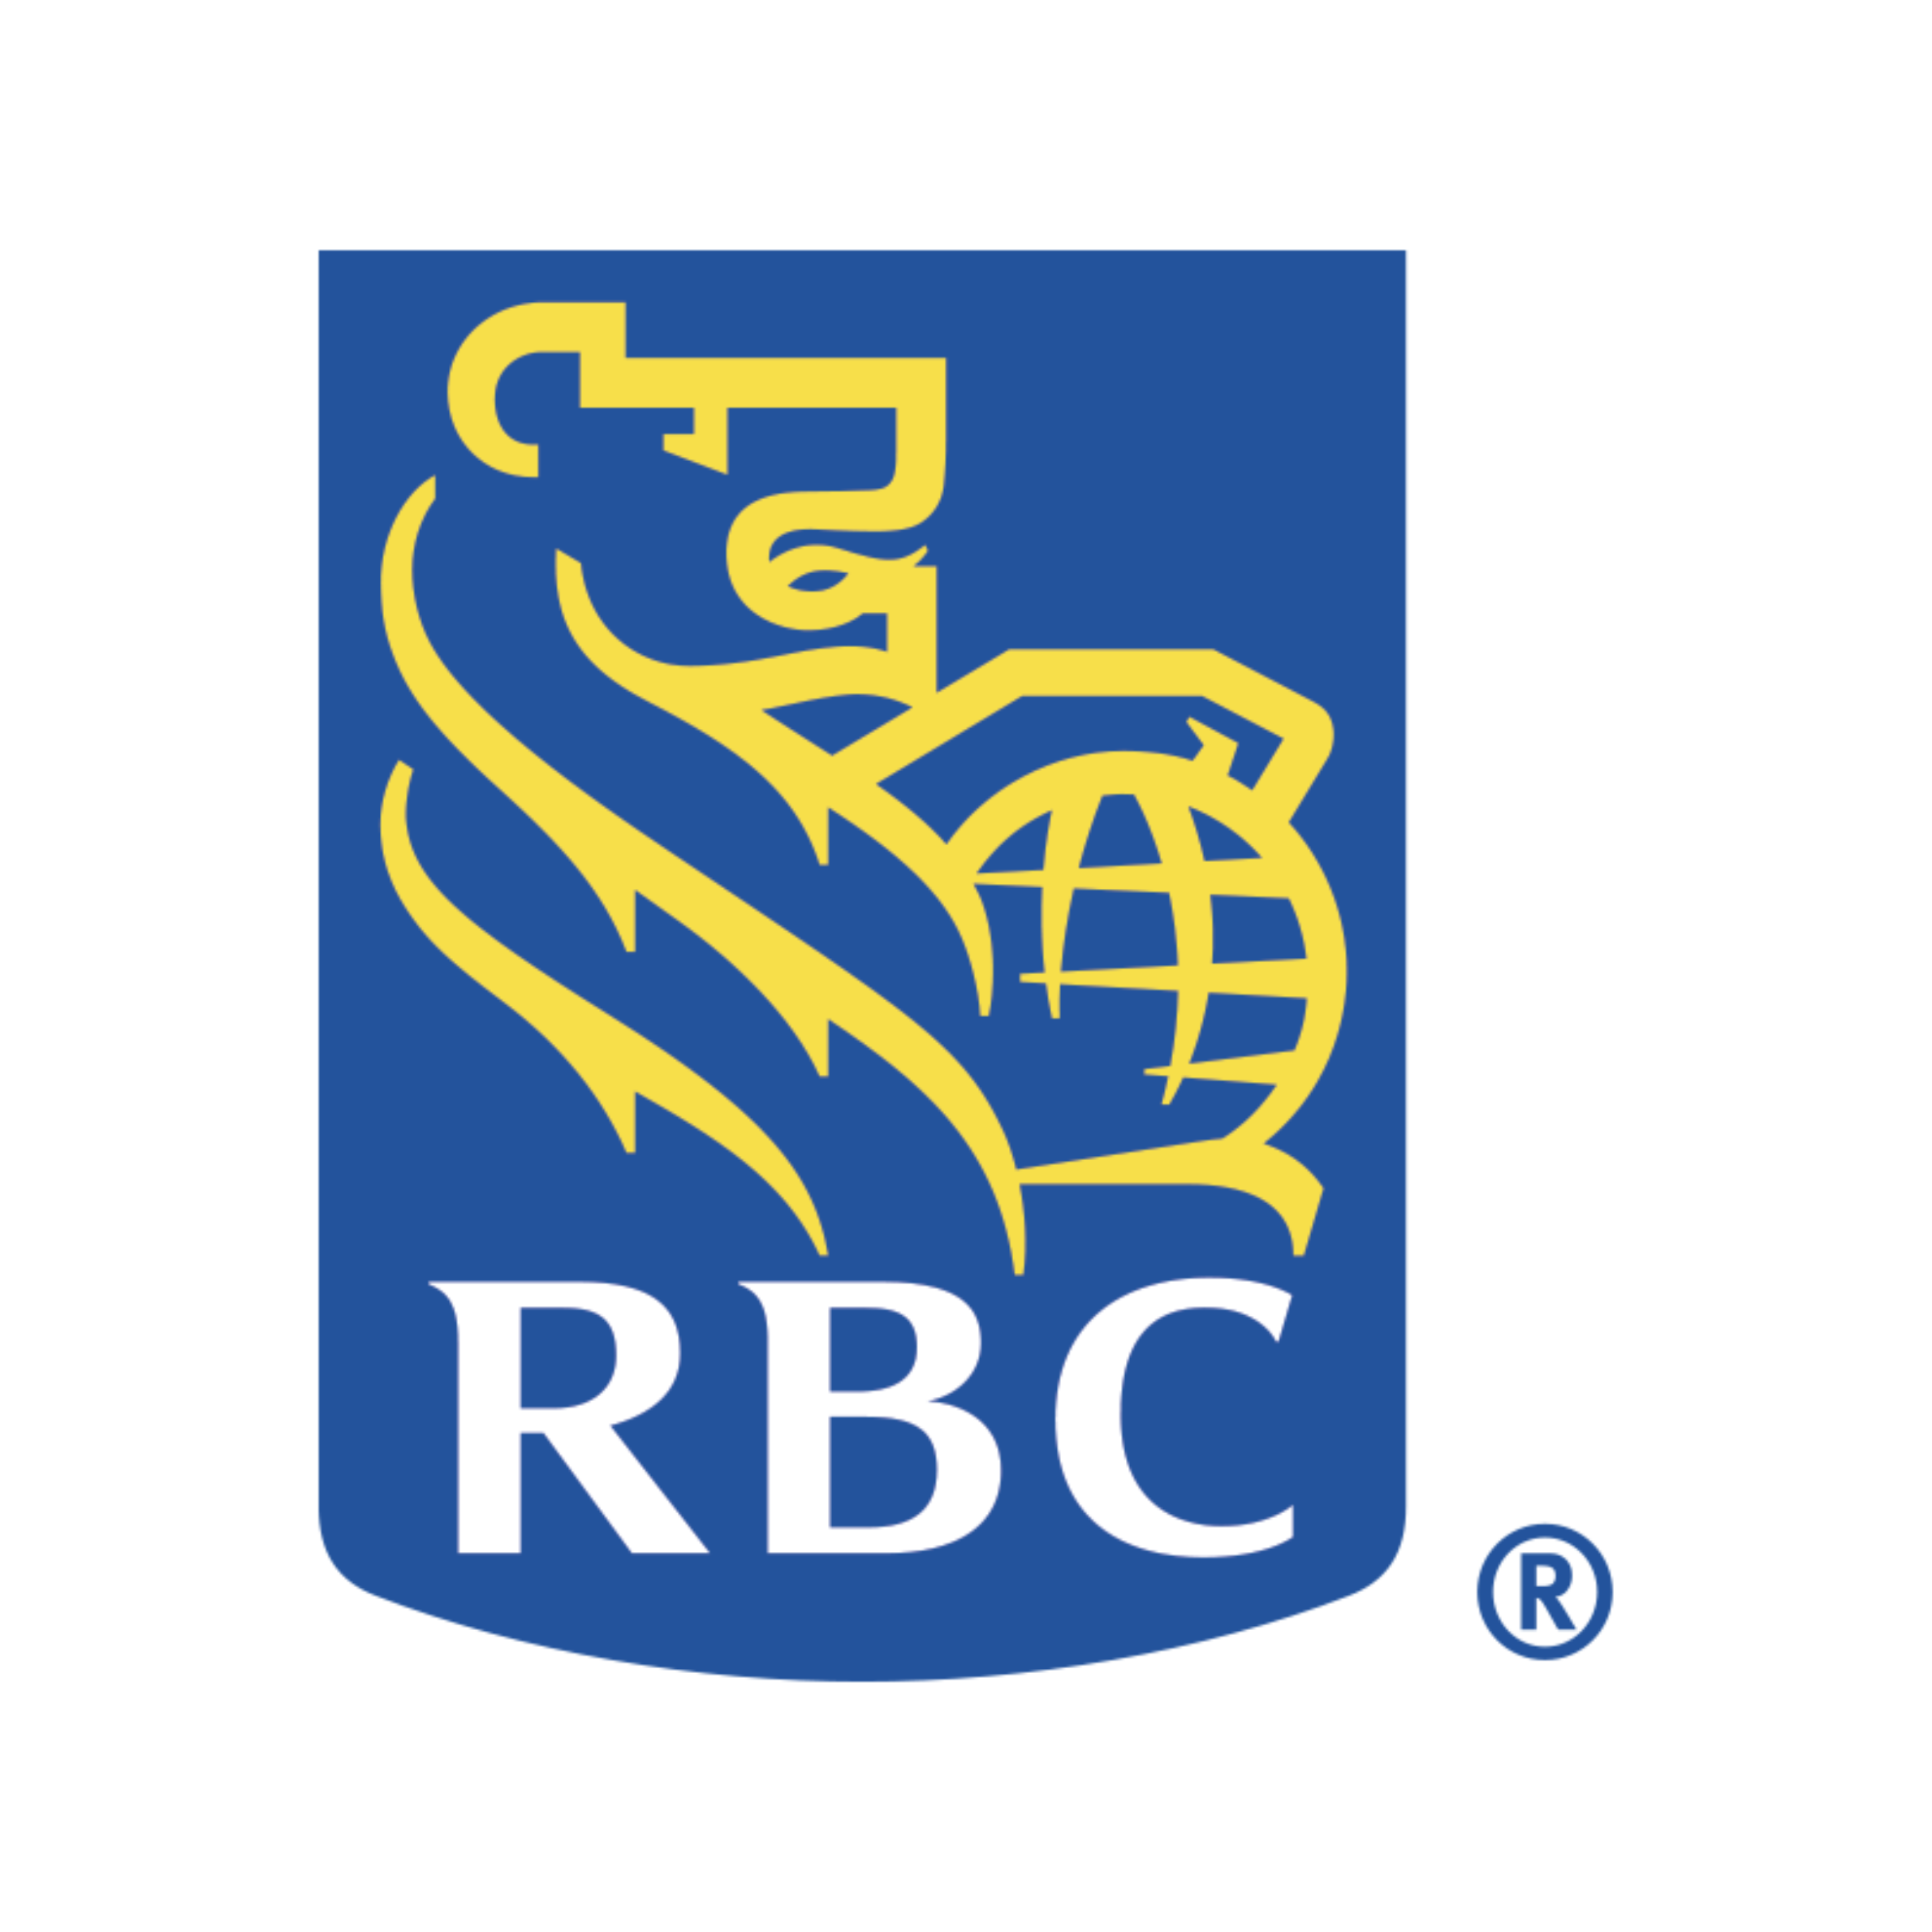 RBC square logo.png